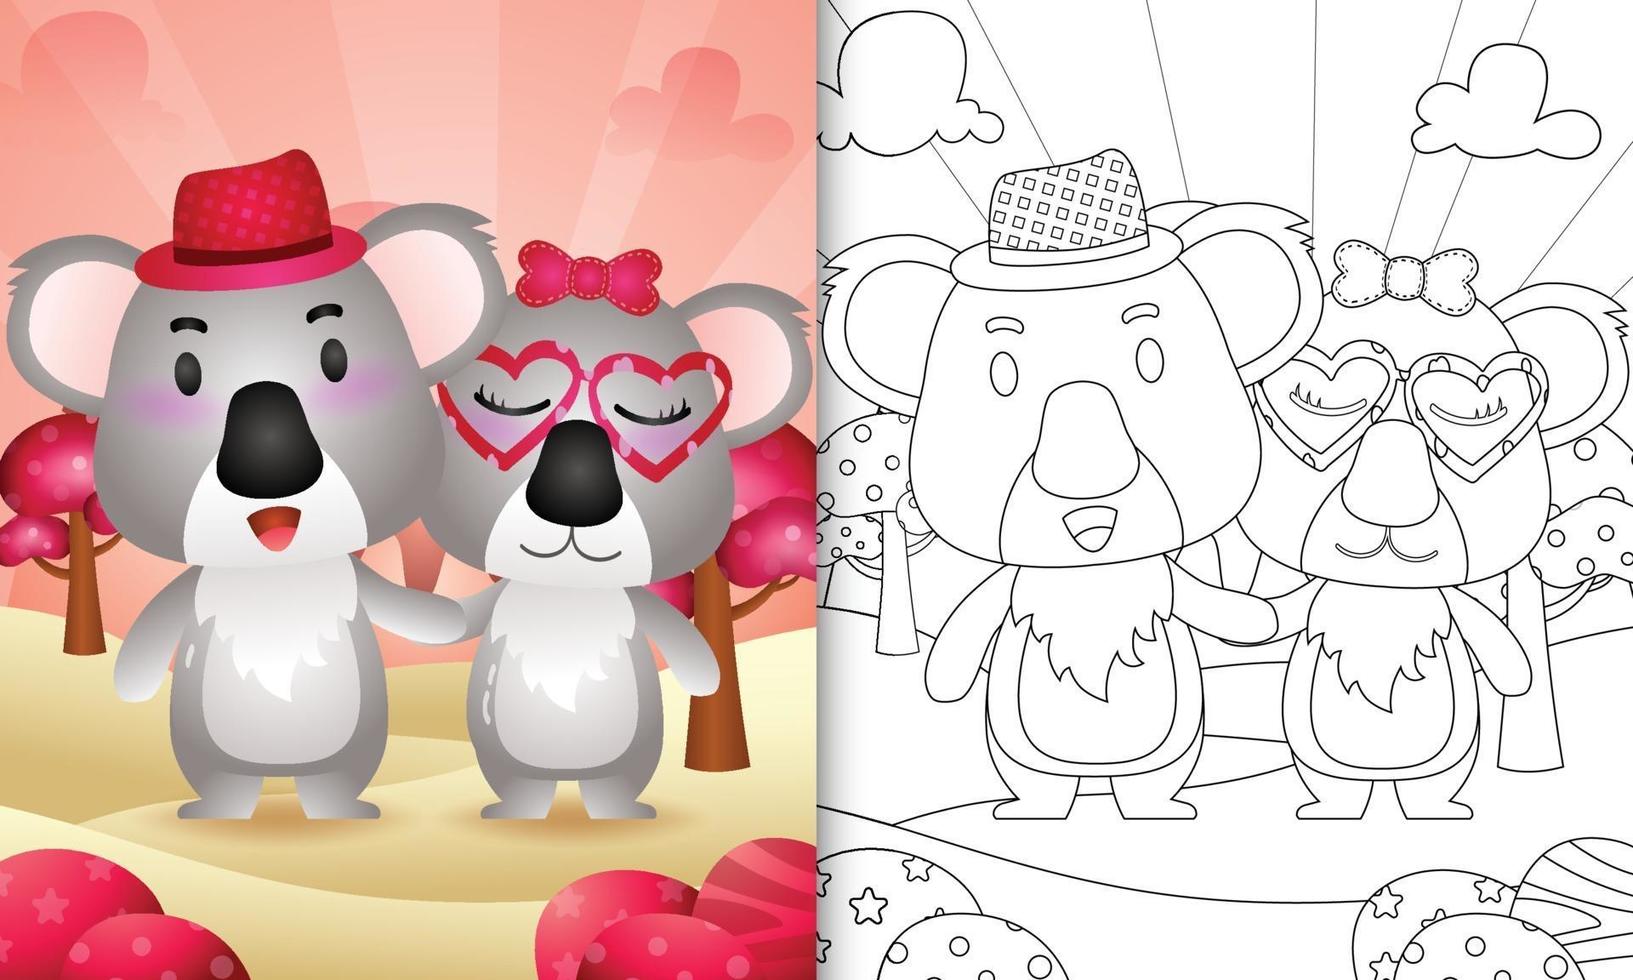 Malbuch für Kinder mit einem niedlichen Koalapaar themenorientierten Valentinstag vektor